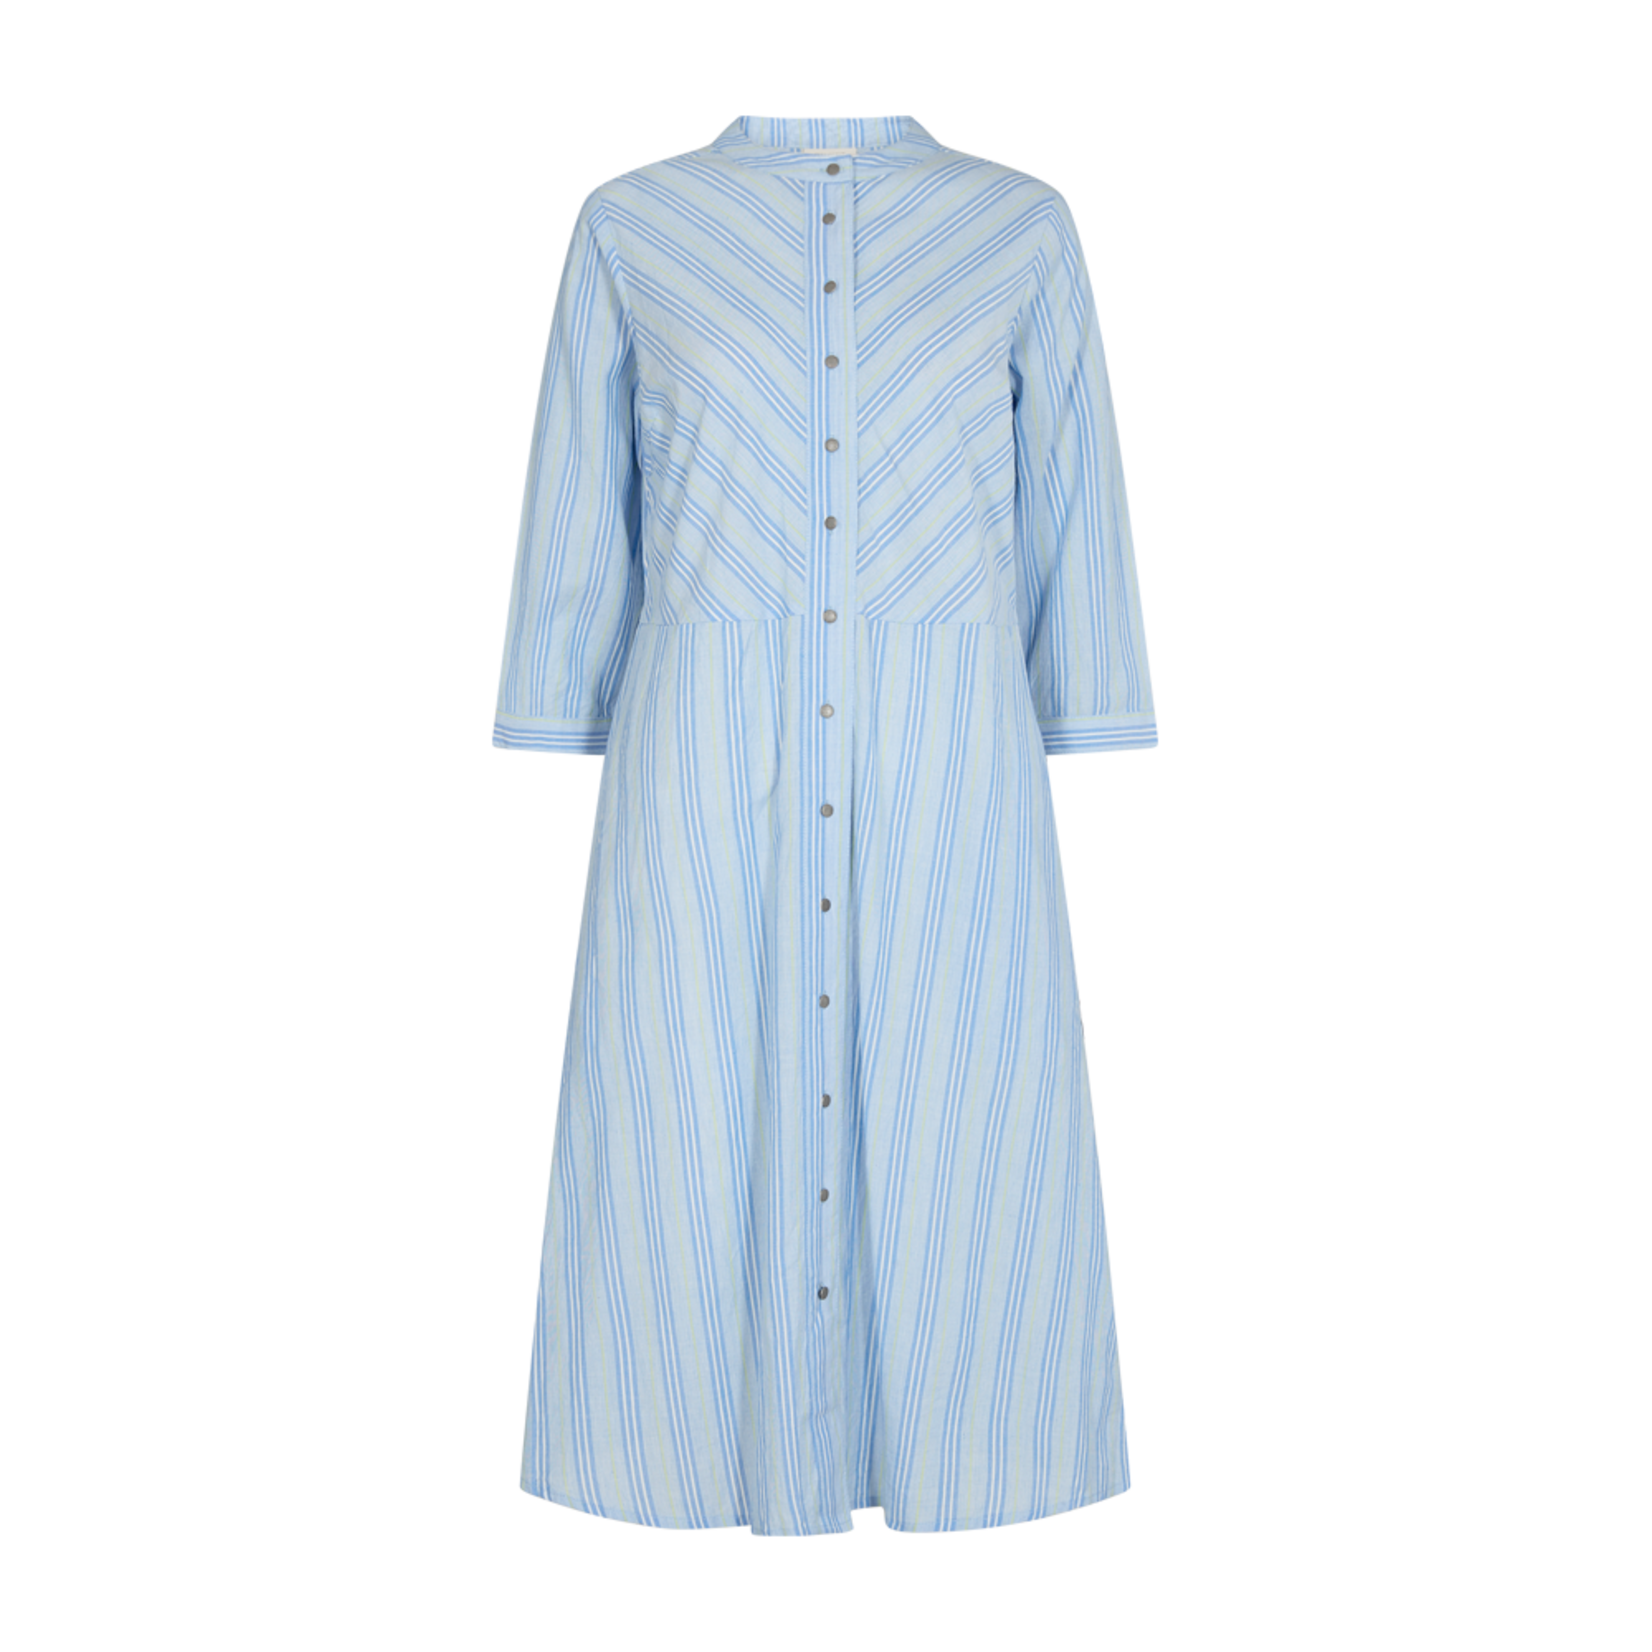 Free/quent Super leuk hemdkleed met 3/4 mouwen, midi van lengte, blauw met strepen.